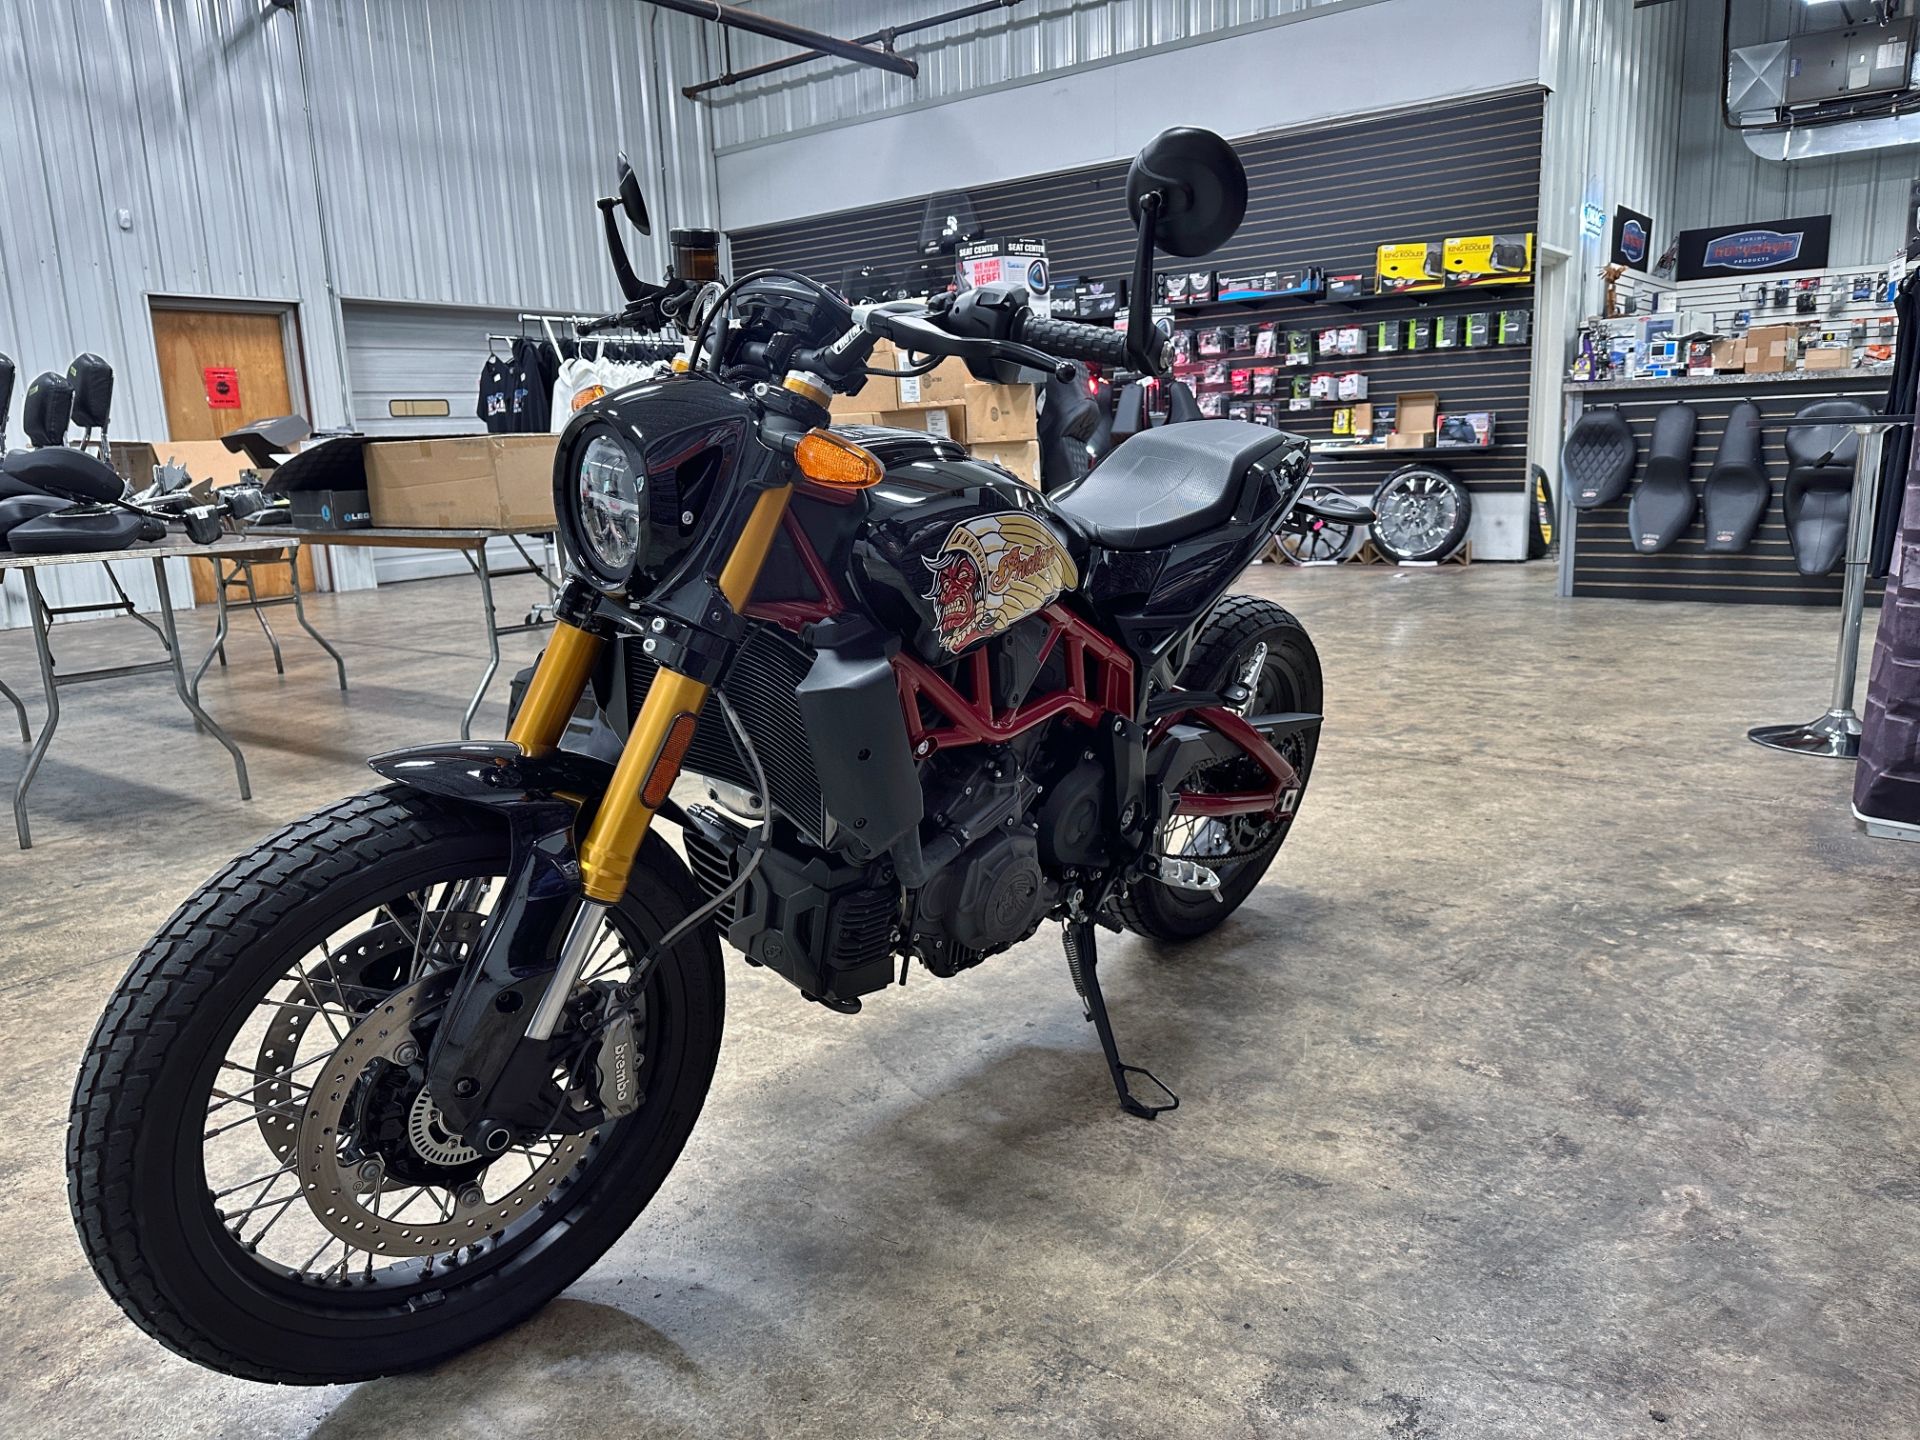 2019 Indian Motorcycle FTR™ 1200 S in Sandusky, Ohio - Photo 5